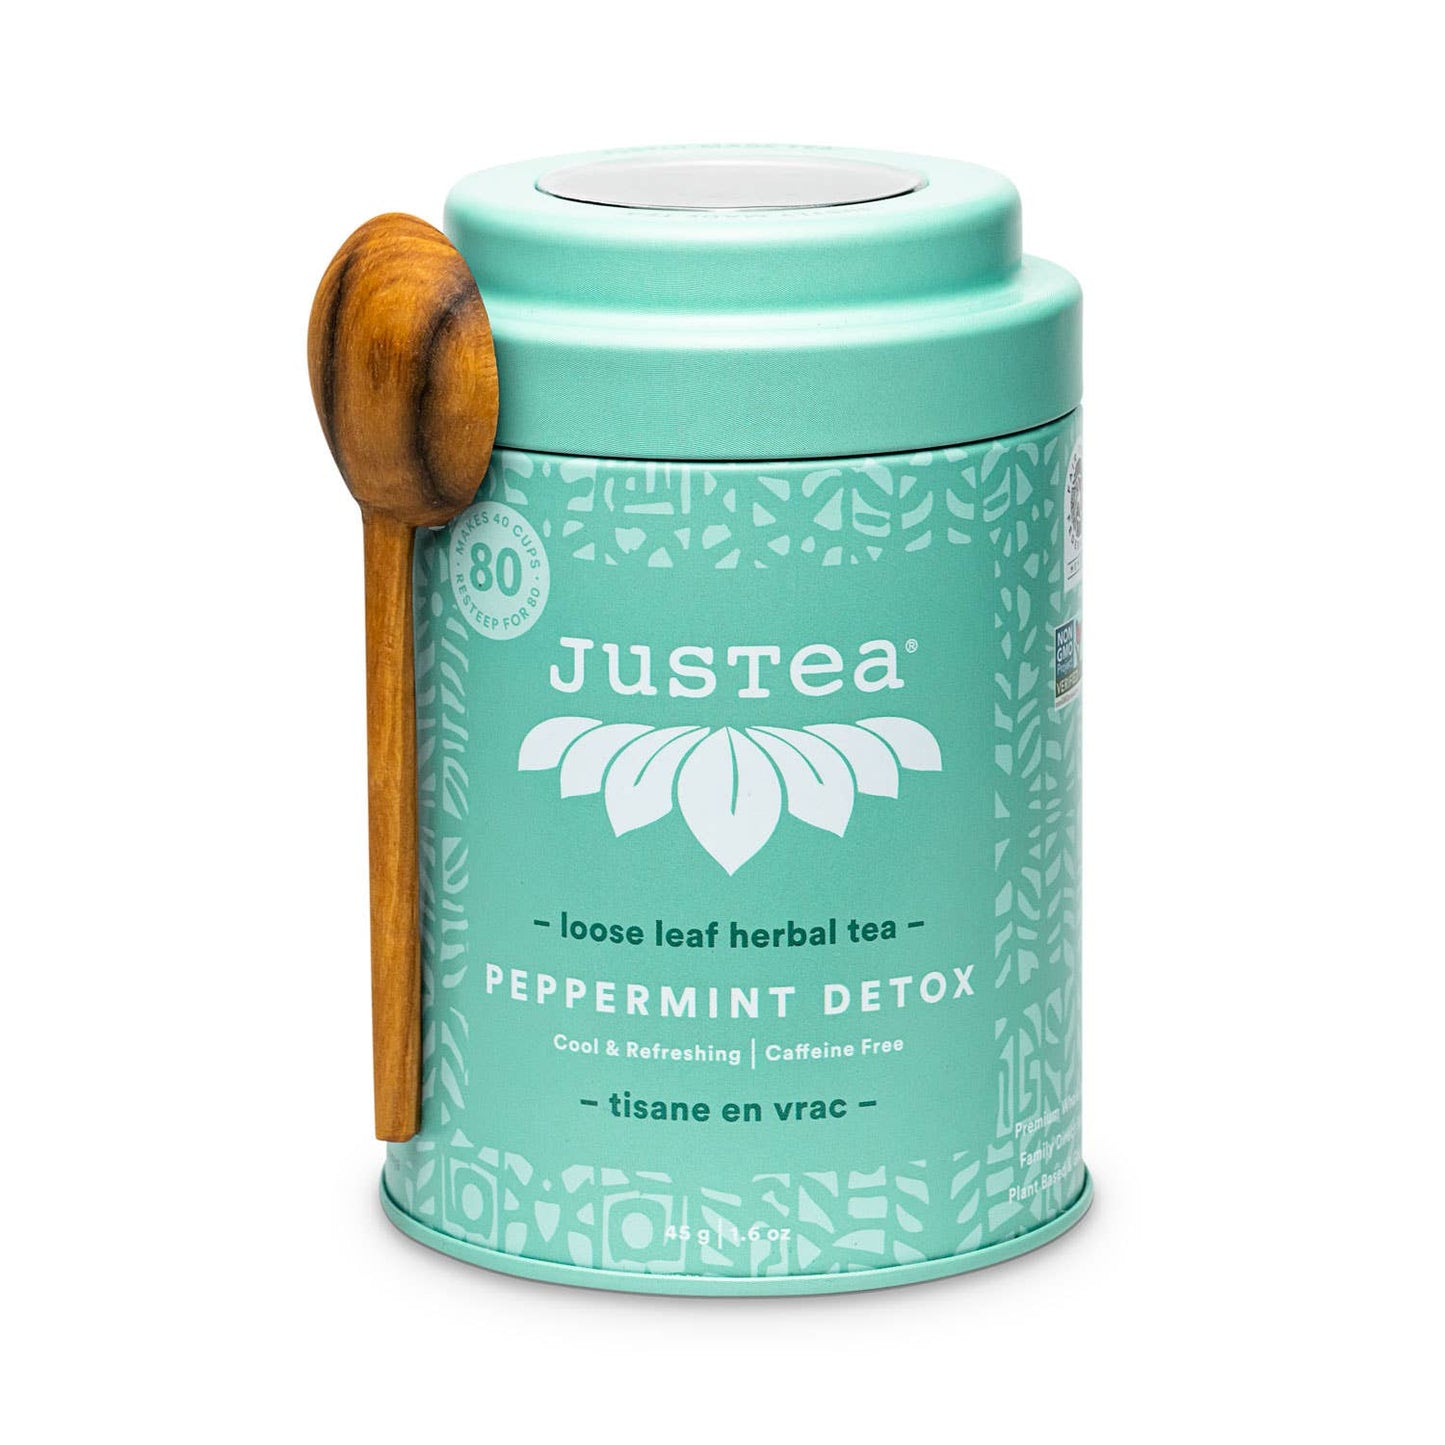 Peppermint Detox Tin & Spoon- Organic, Fair-Trade Herbal Tea